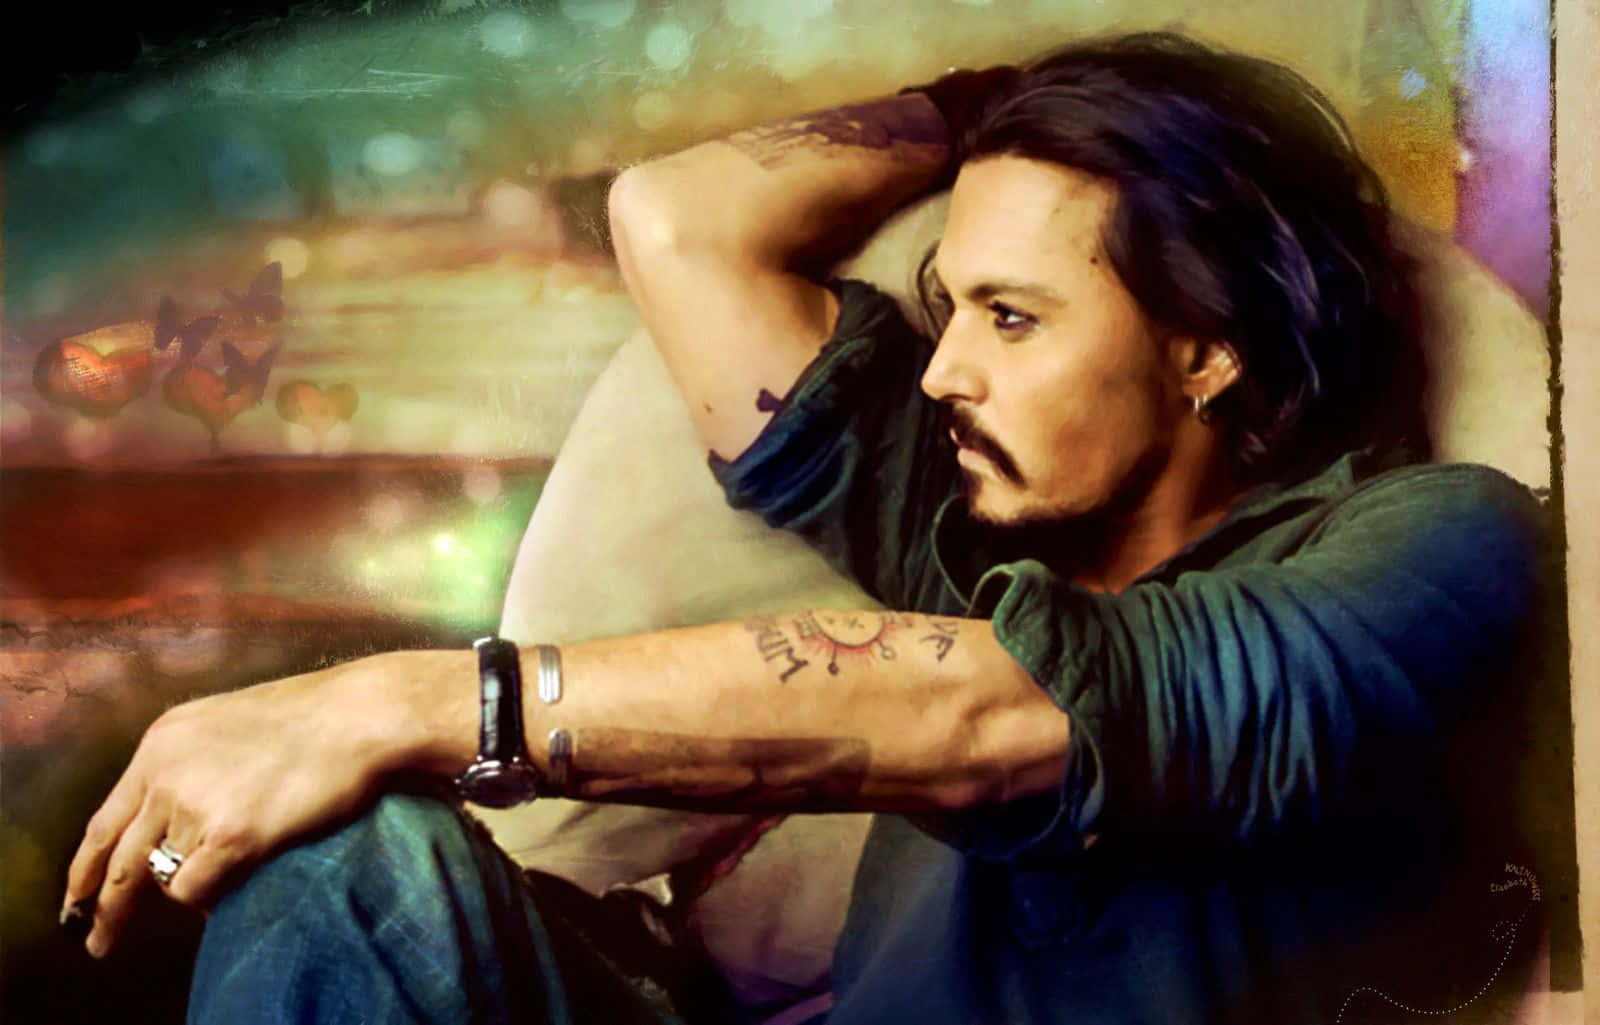 Bildpå Johnny Depp Som Ser Snygg Och Cool Ut.